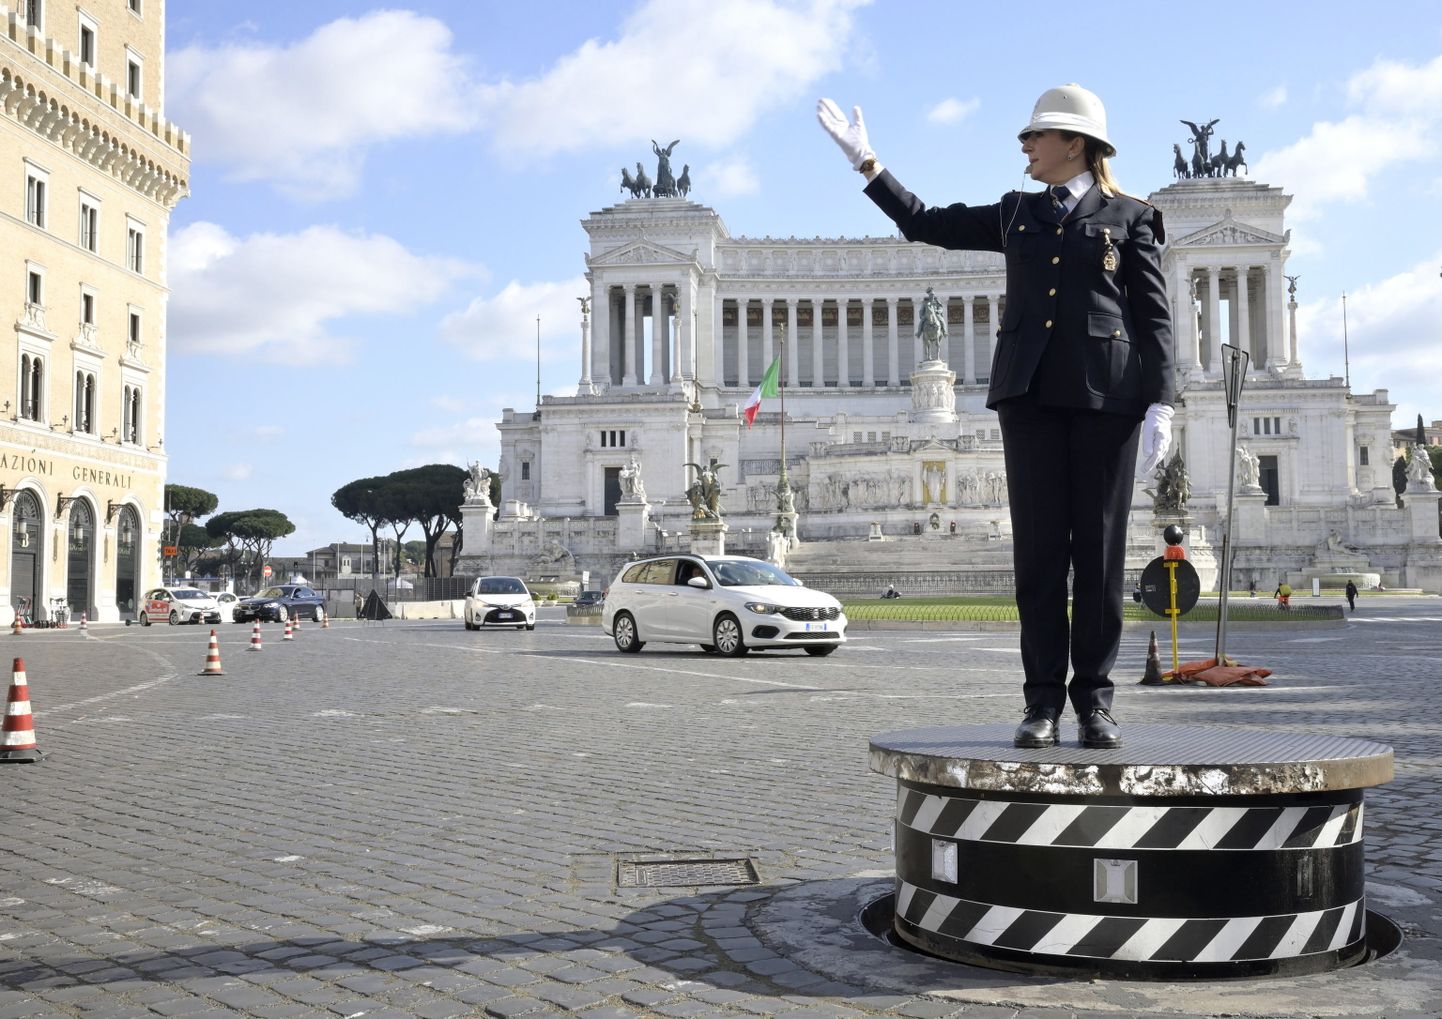 Rooma esimene naisliikluspolitseinik Cristina Corbucci oma ametipostil Piazza Venezial.